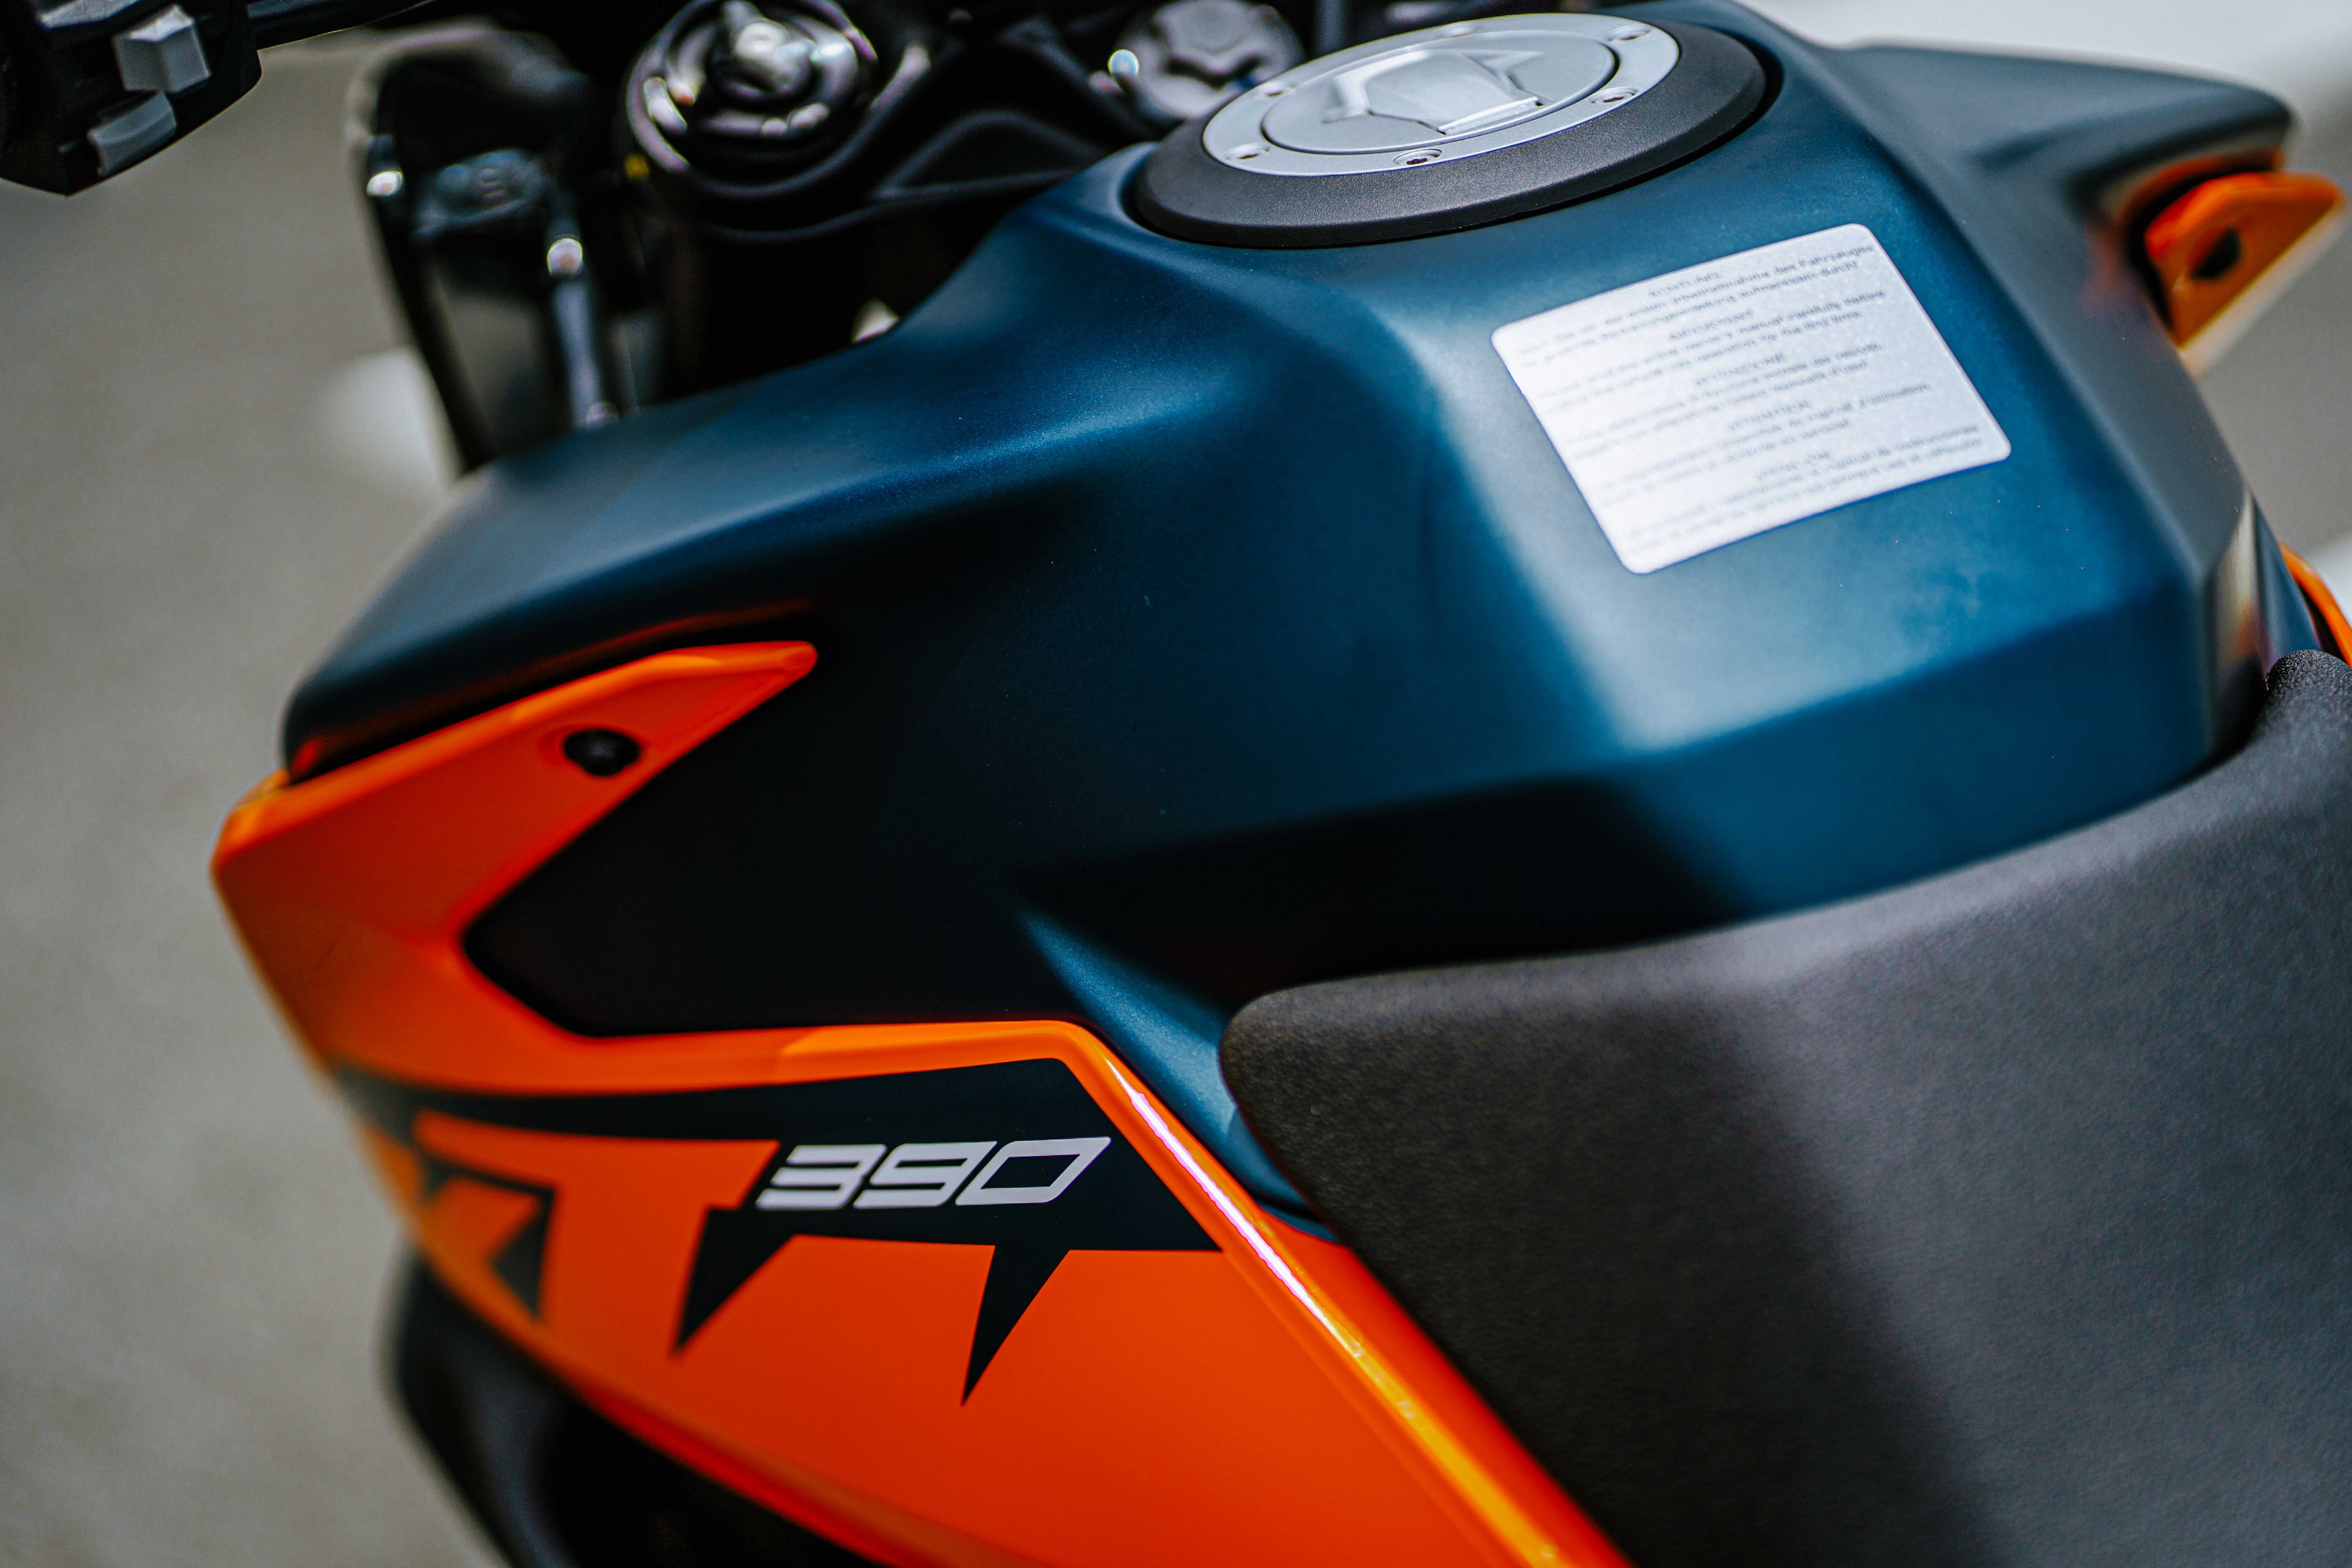 Giá bán hơn 230 triệu đồng, KTM 390 Adventure 2022 có gì đặc biệt? Cận cảnh bình xăng.jpg